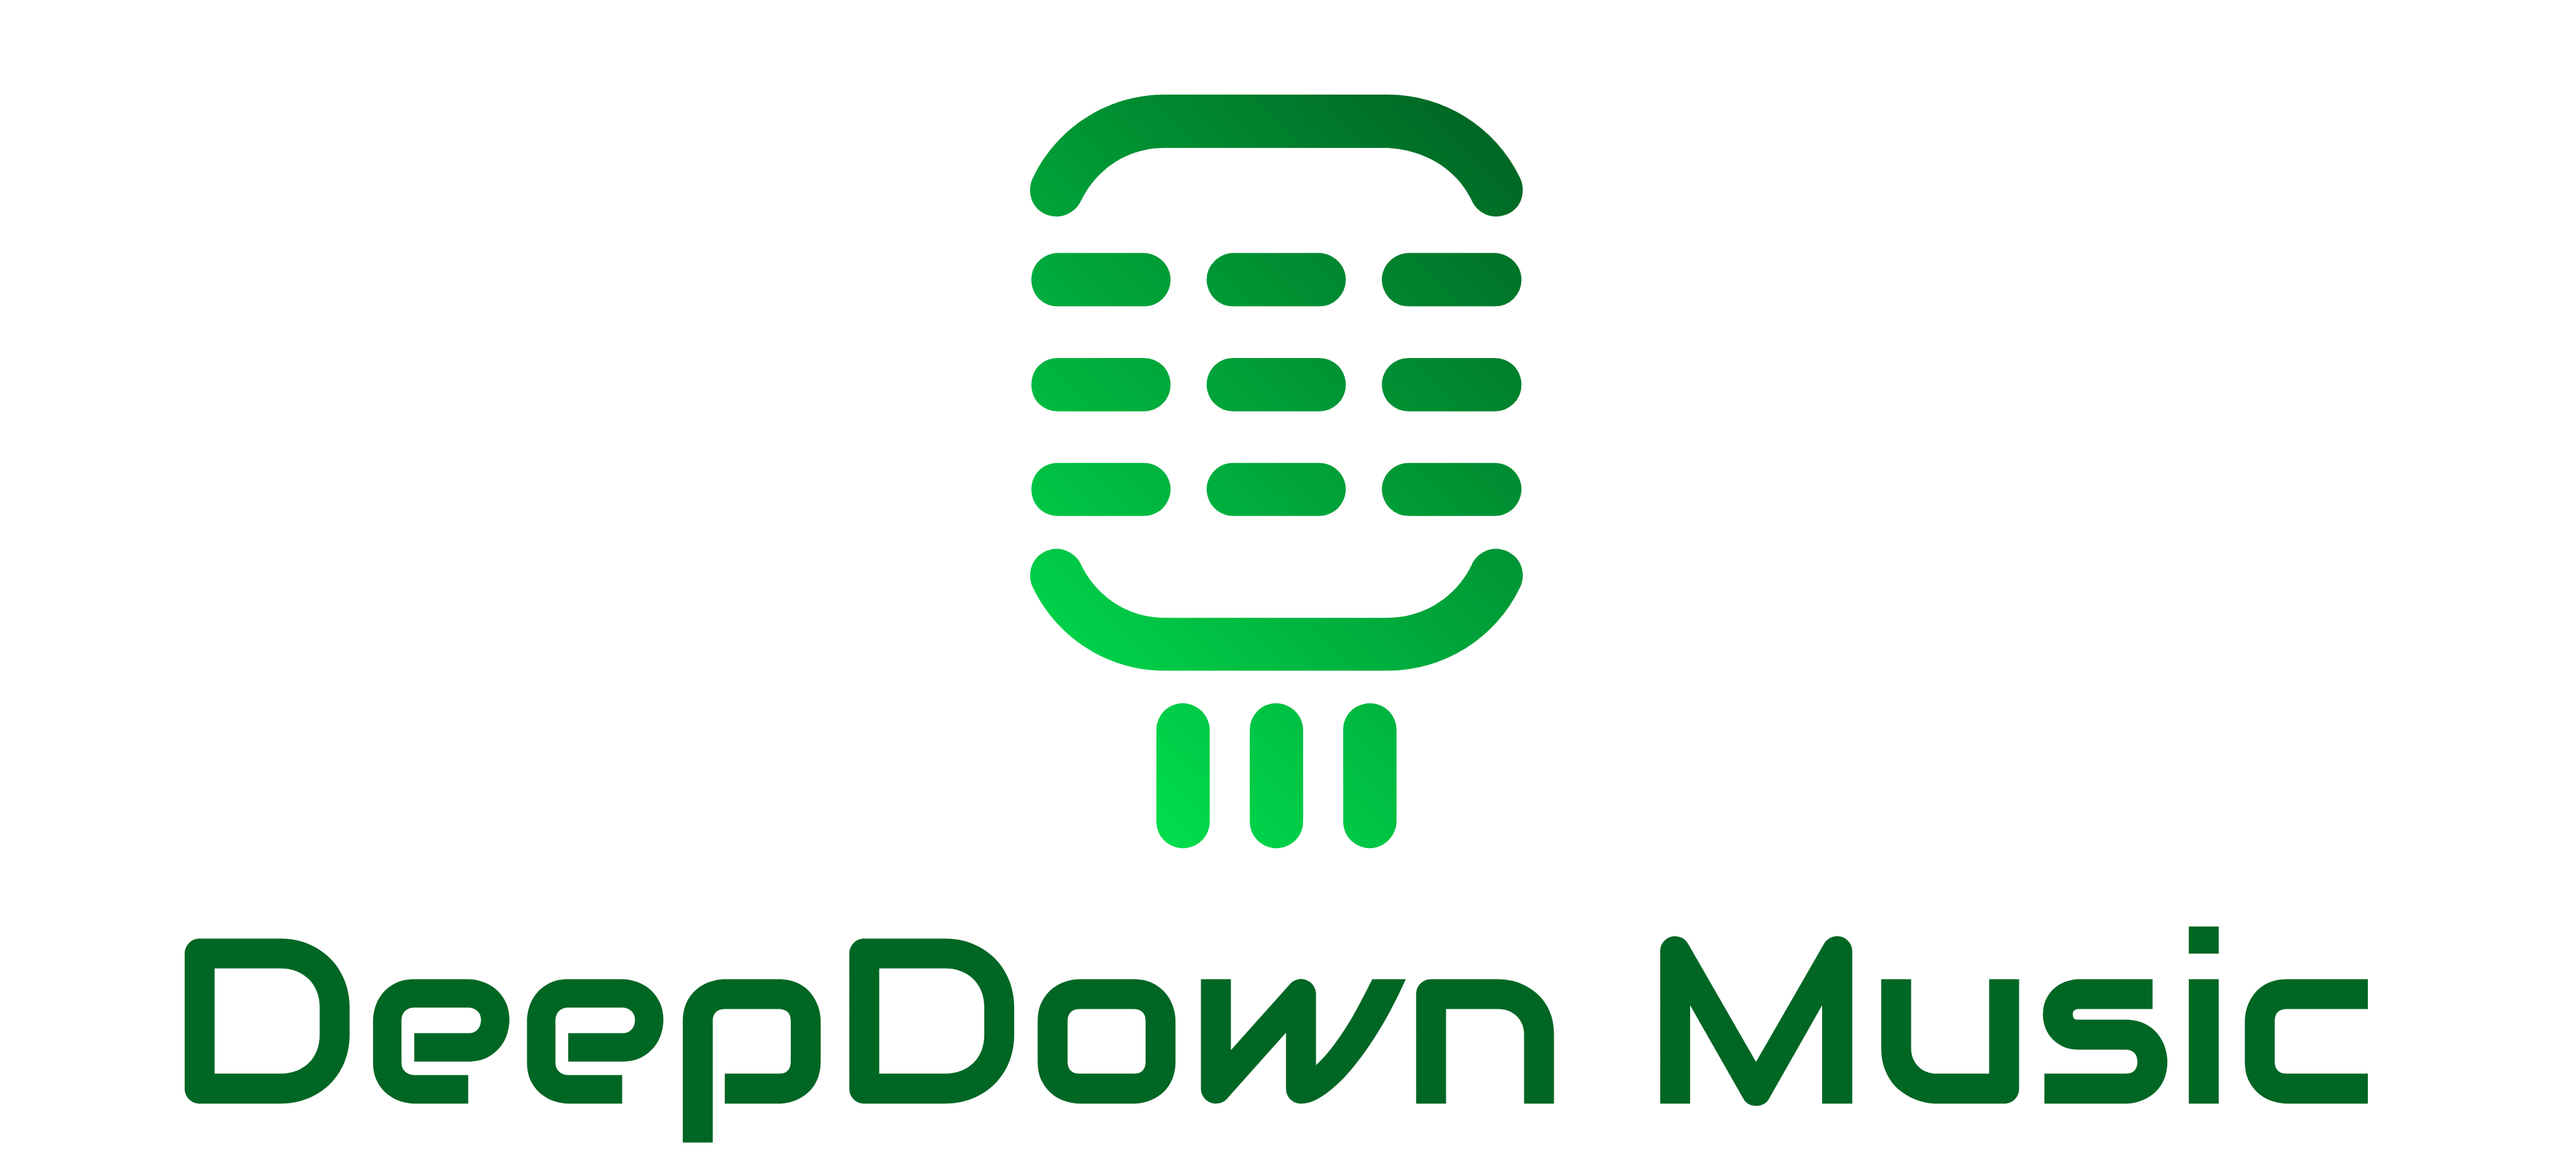 DeepDown Music